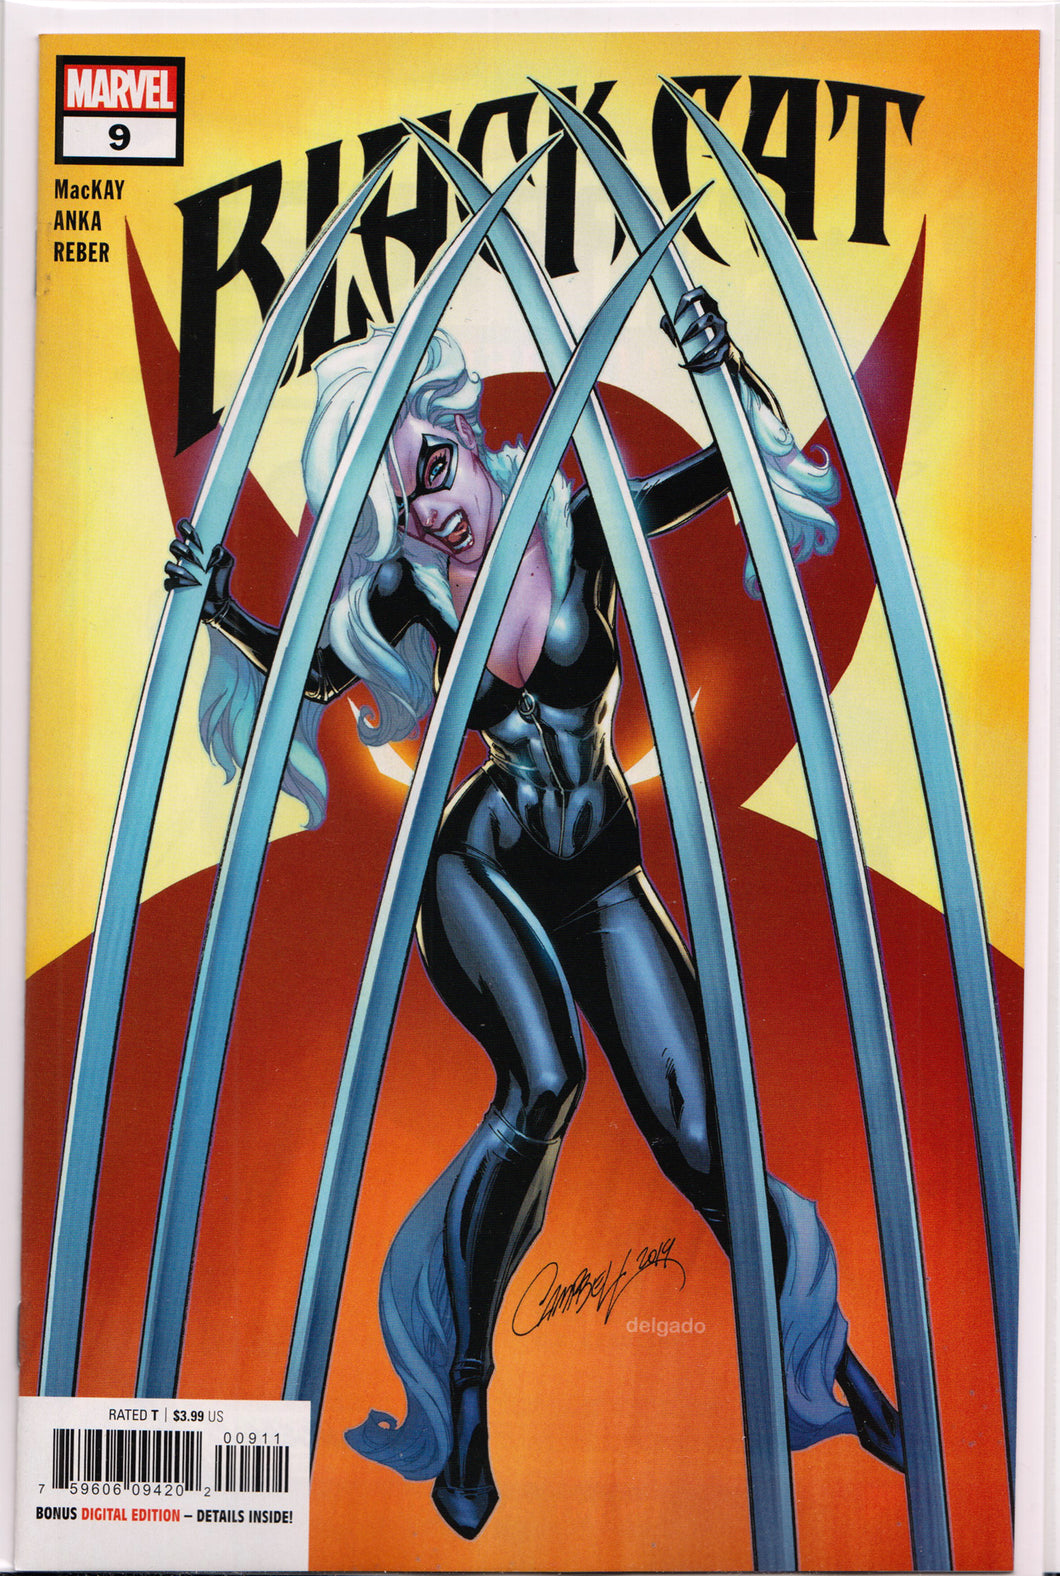 BLACK CAT #9 (J. SCOTT CAMPBELL VARIANT) COMIC BOOK ~ Marvel Comics